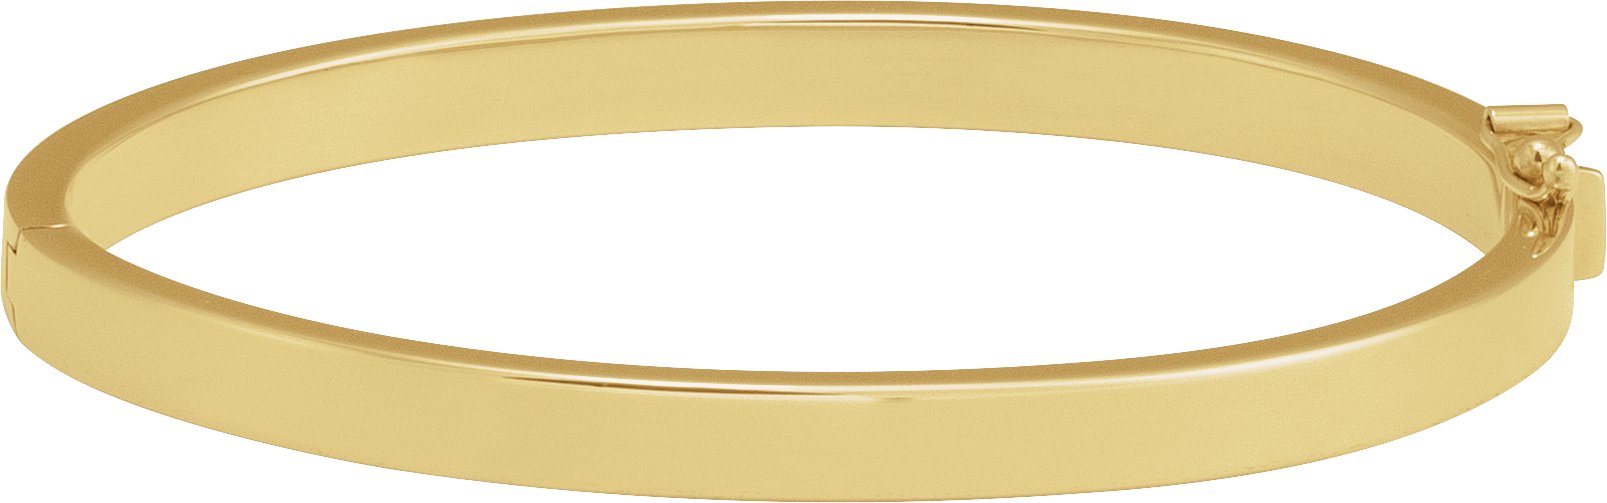 14K Gold Hinged Bangle Bracelet